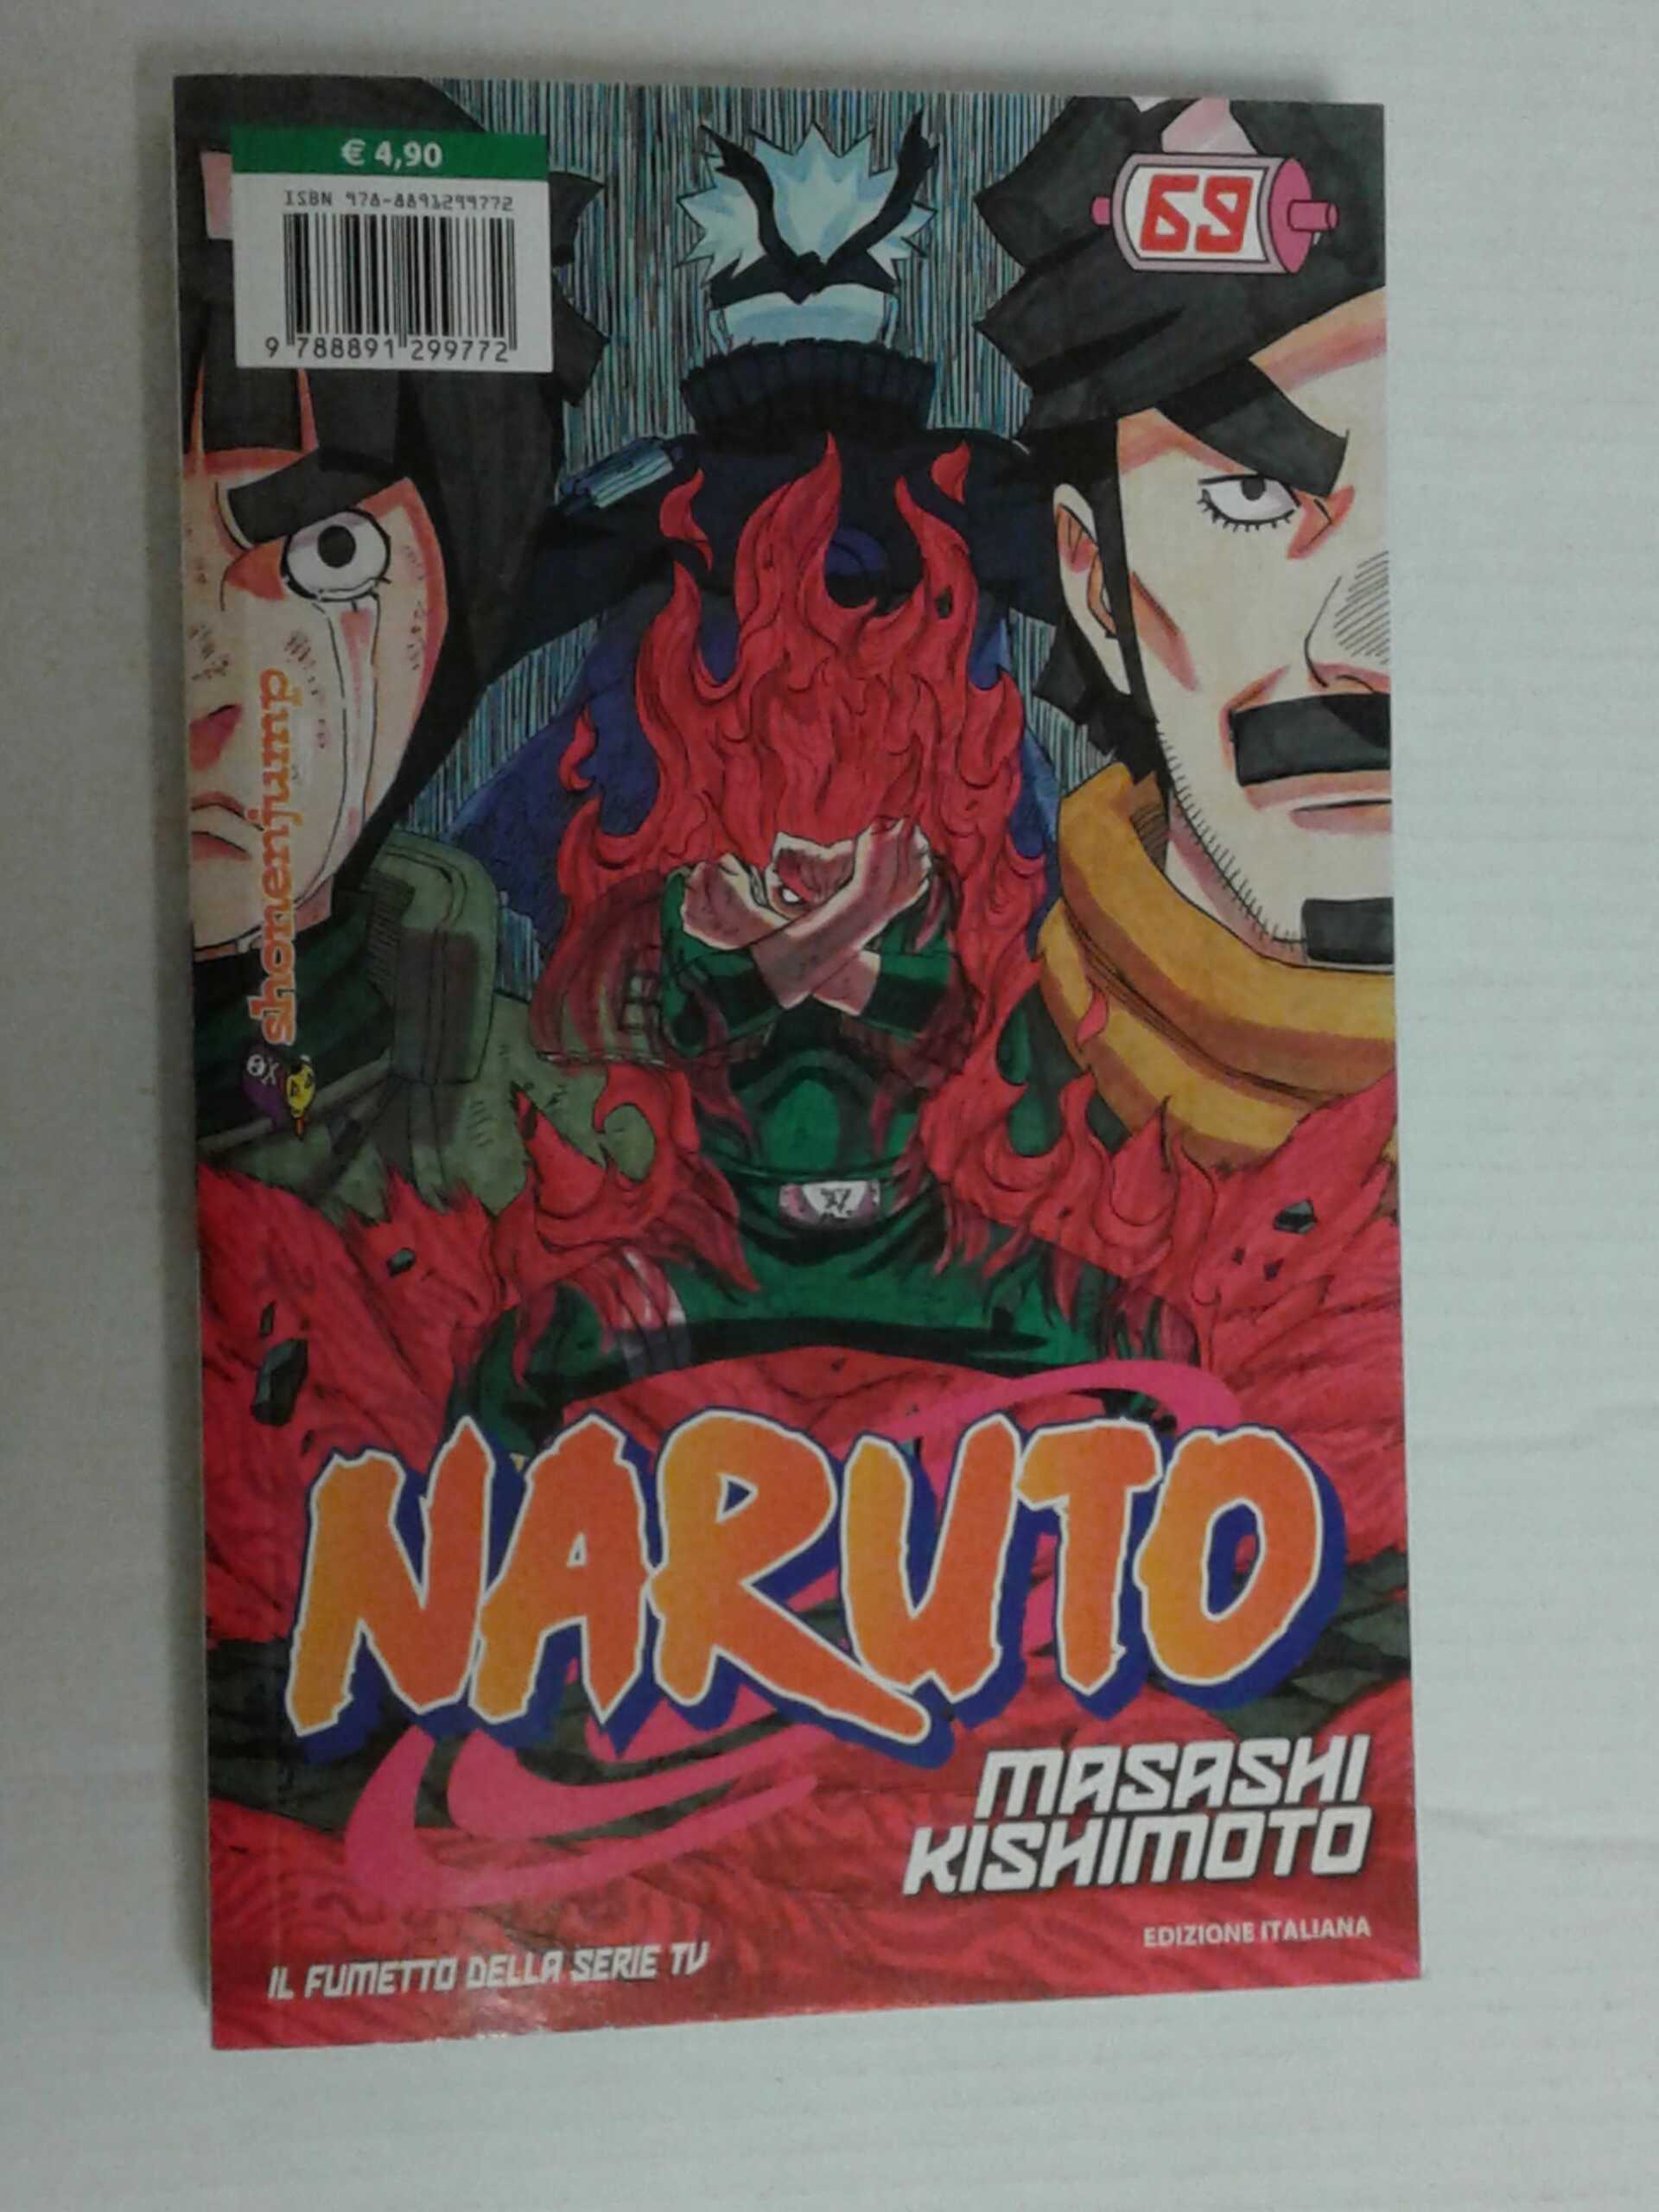 Naruto. Il mito. Vol. 2 - Masashi Kishimoto - Libro - Panini